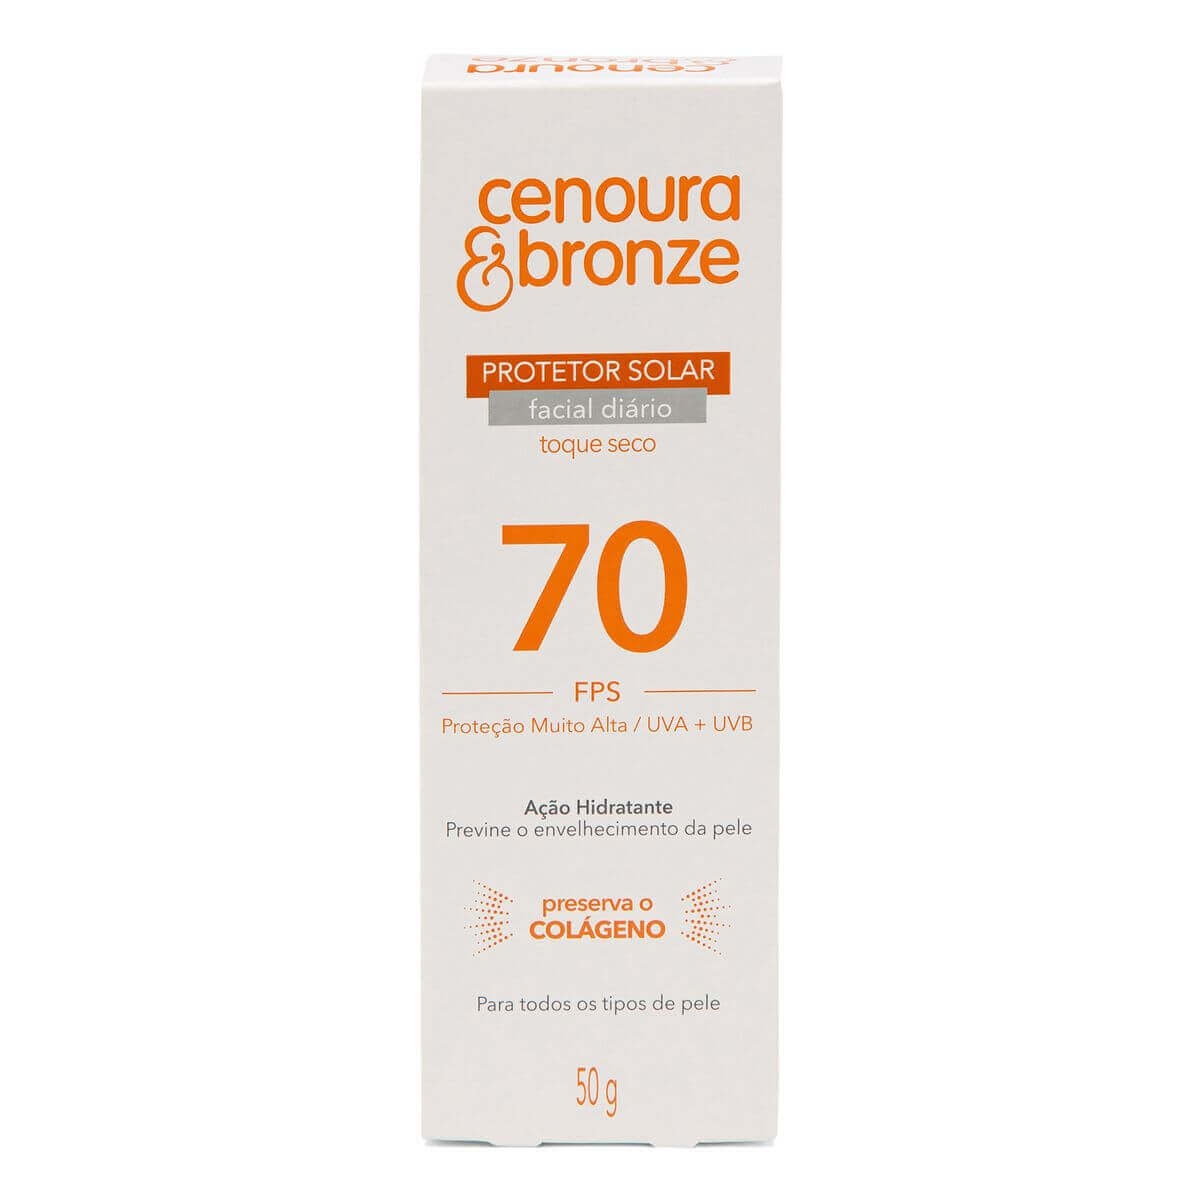 Protetor Solar Facial Cenoura & Bronze FPS70 com 50g